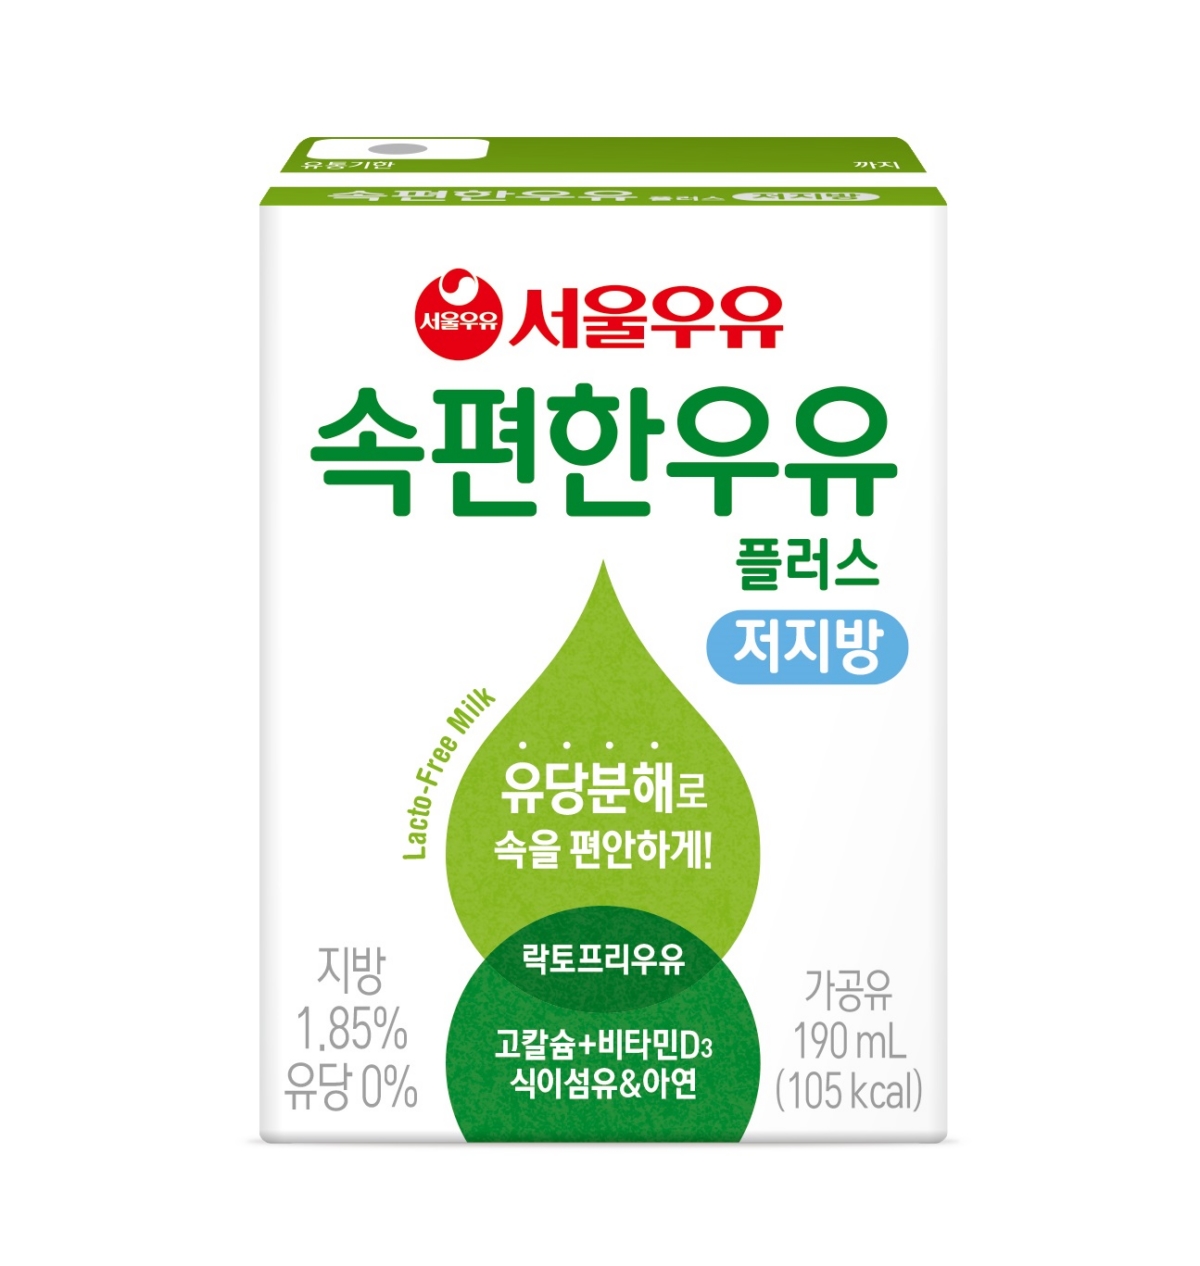 우유 서울 공정위, ‘우유